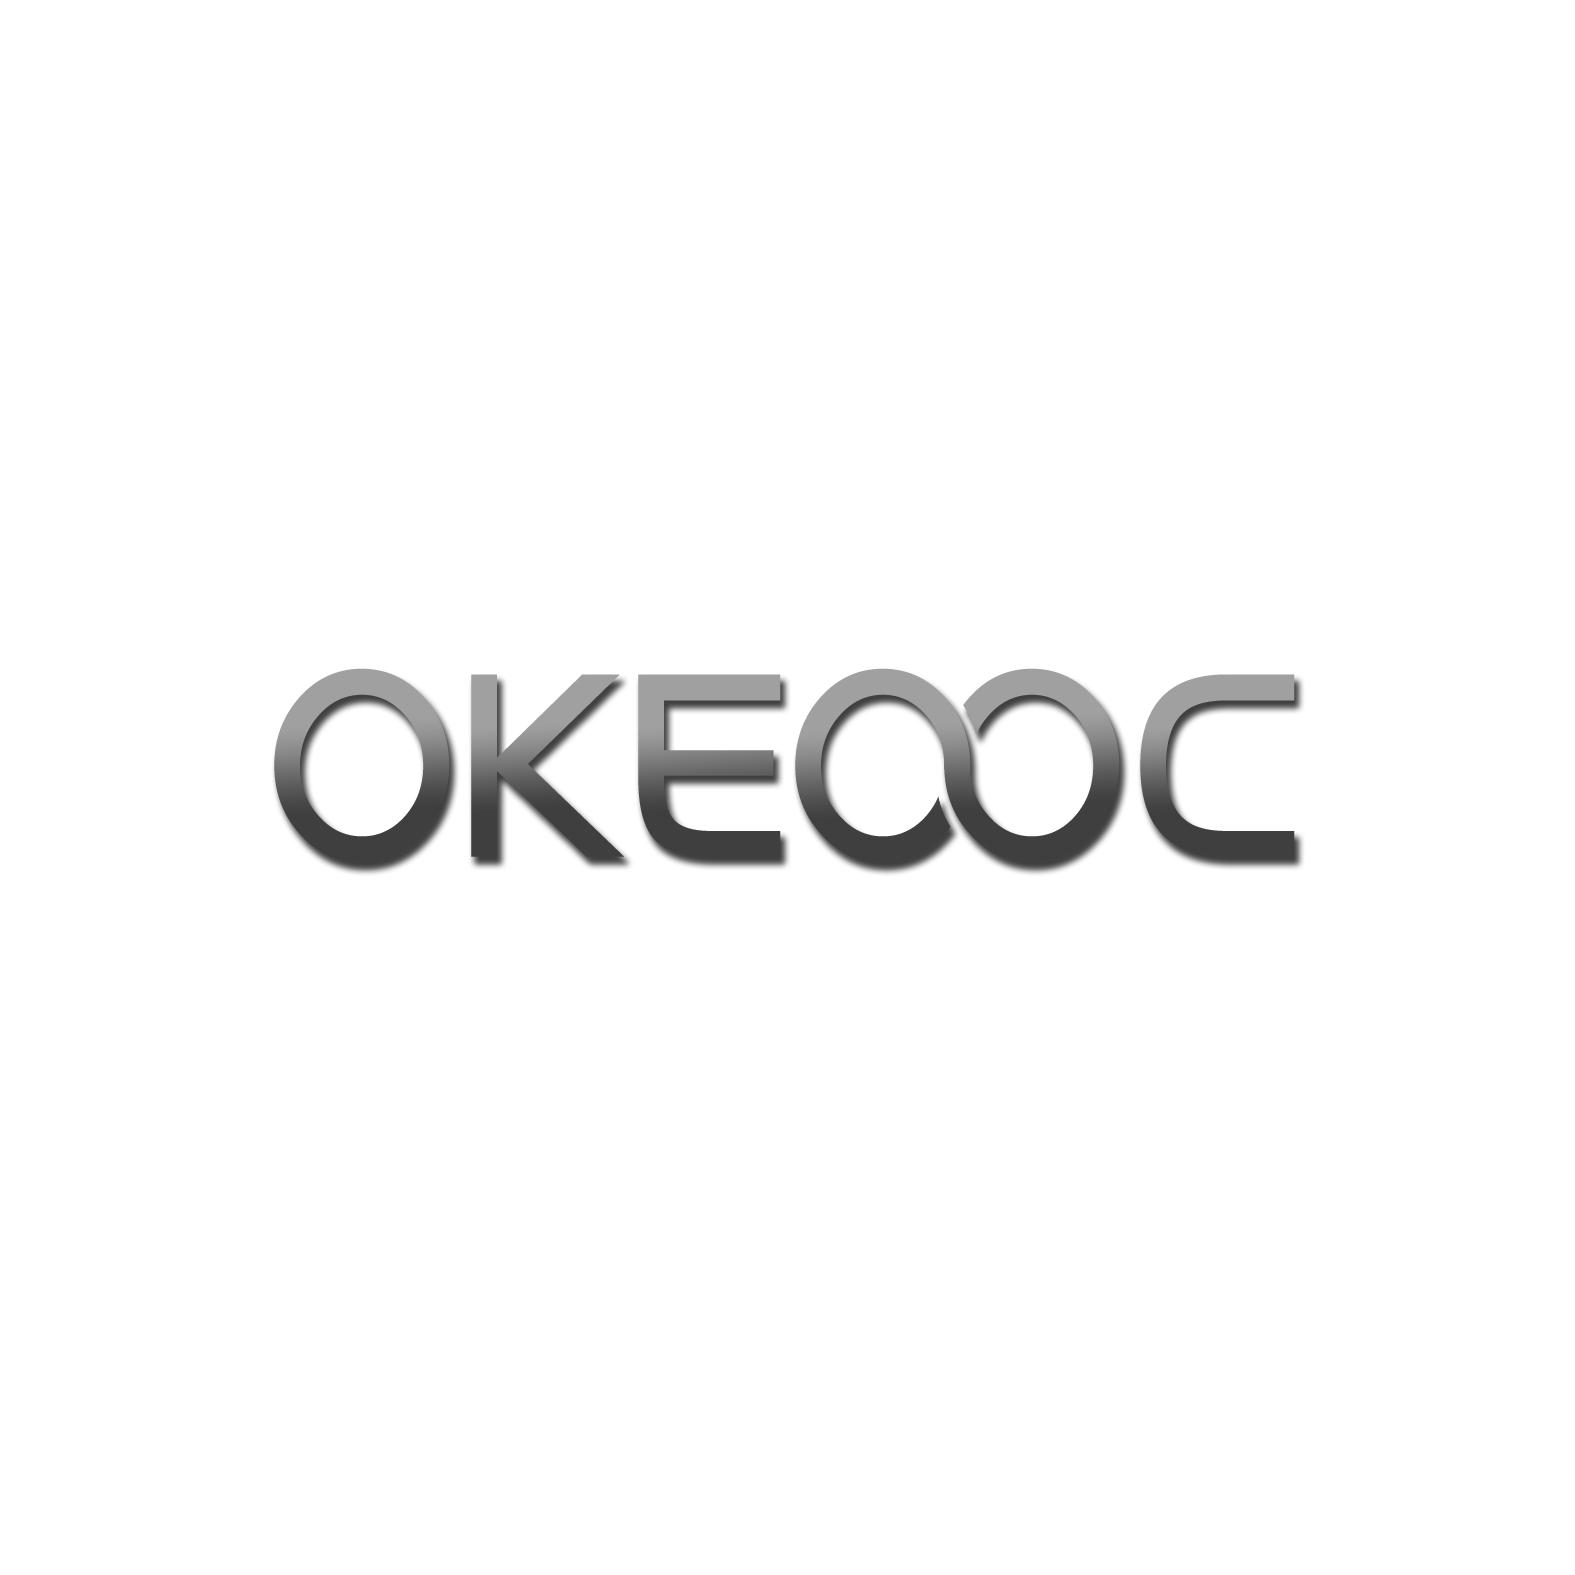 转让商标-OKEOOC